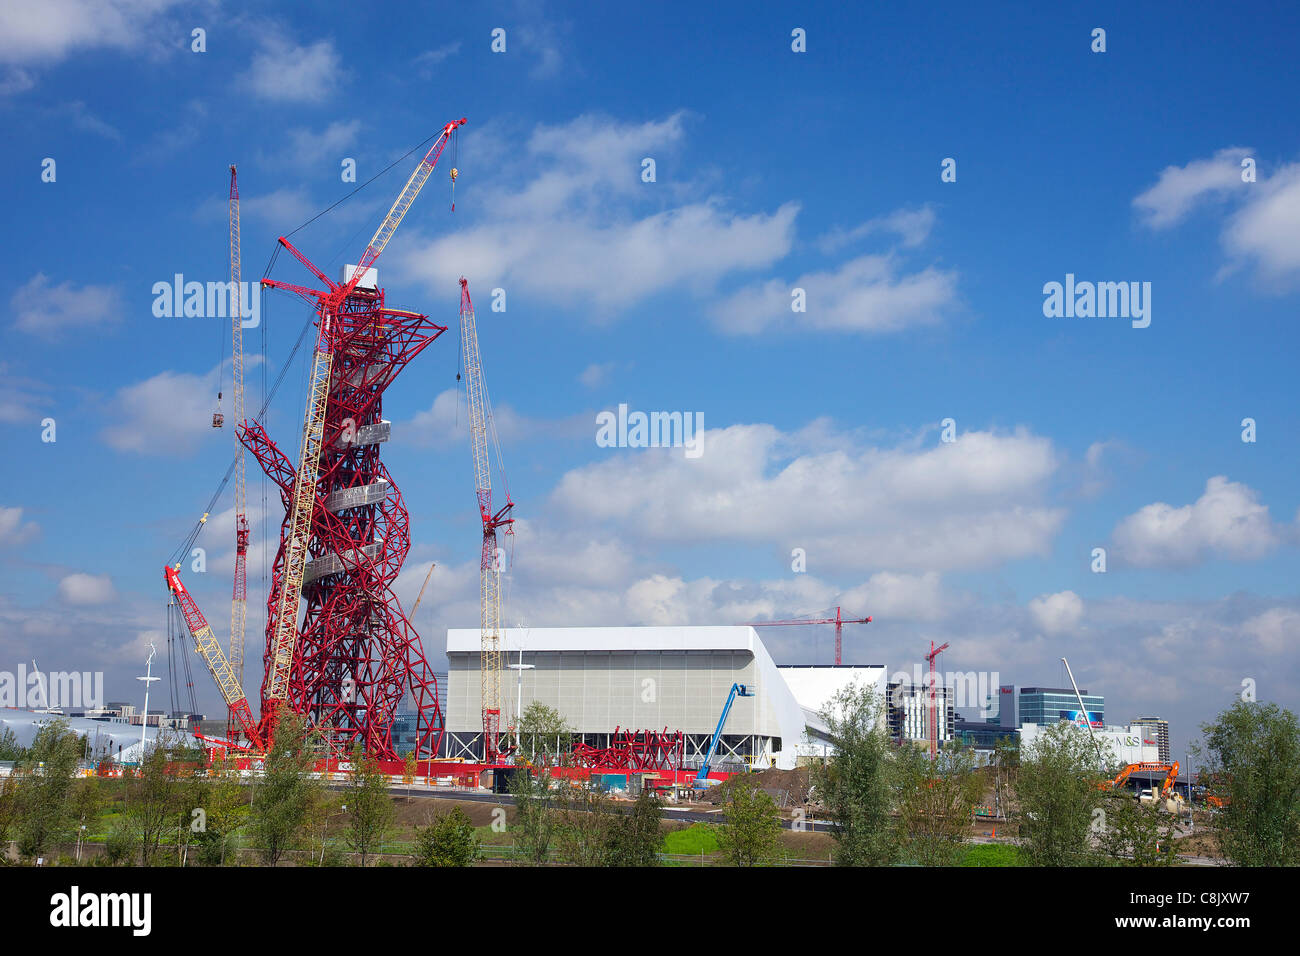 ArcelorMittal Orbit, par Anish Kapoor, durant la construction, et le centre aquatique, Stratford, East End, Londres, Angleterre, RU, ONU Banque D'Images